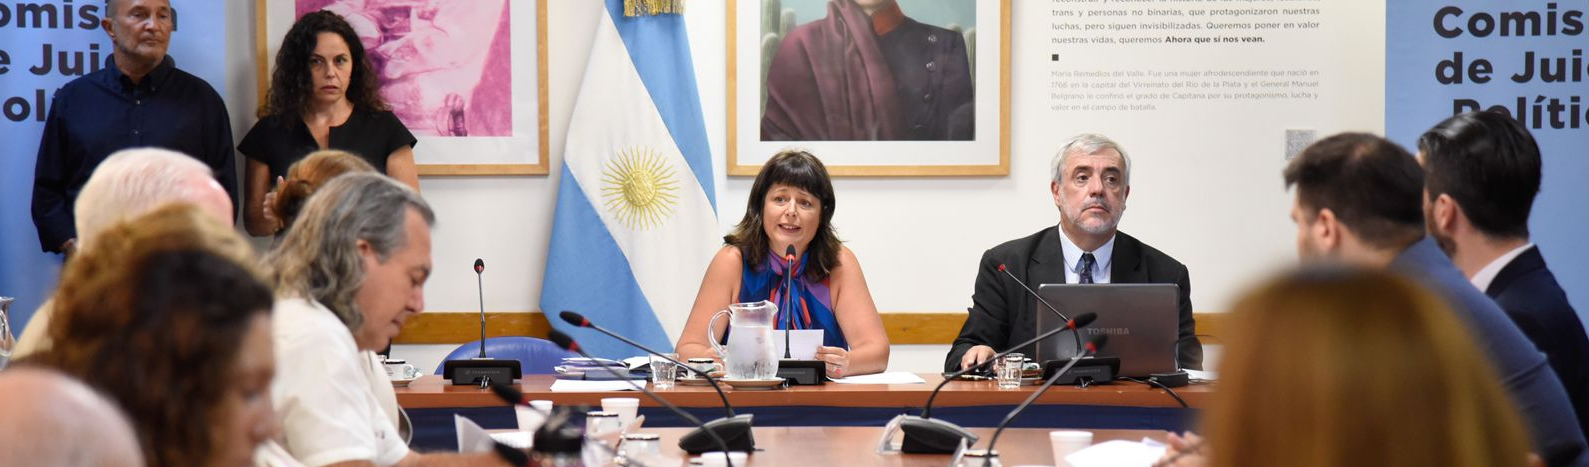 Peronismo reage e Corte Suprema da Argentina vai ser julgada por ações golpistas